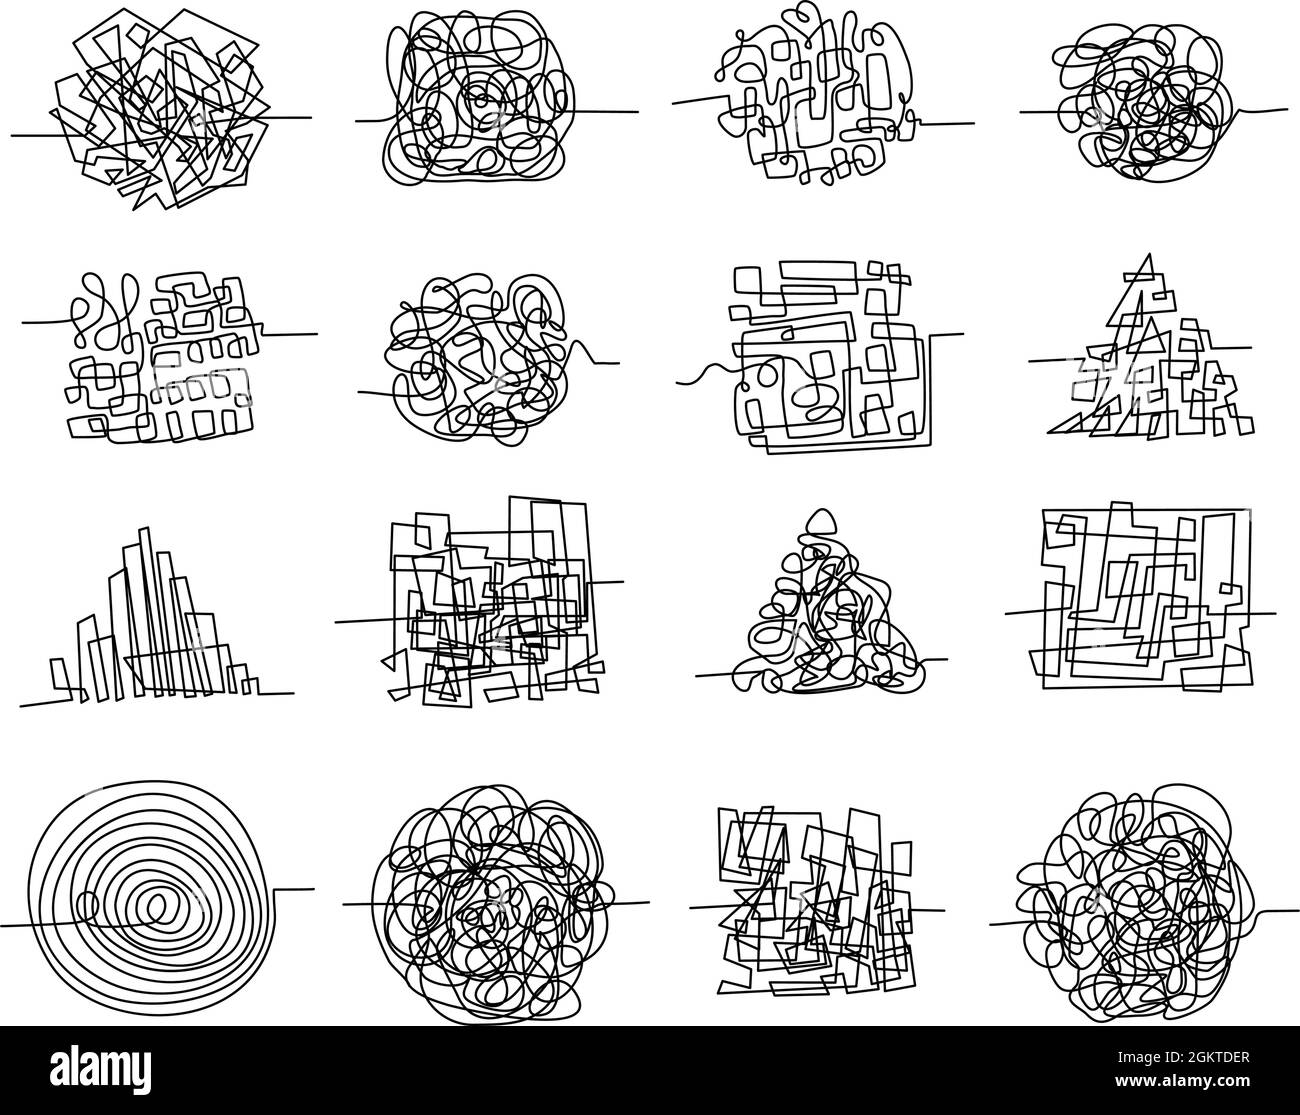 Chaos Linie Scribbles und zufällig verworrene Labyrinthformen. Pen Doodle Konzept von chaotischen Gedanken, komplizierte Problem und verwirrt Geist Vektor-Set Stock Vektor